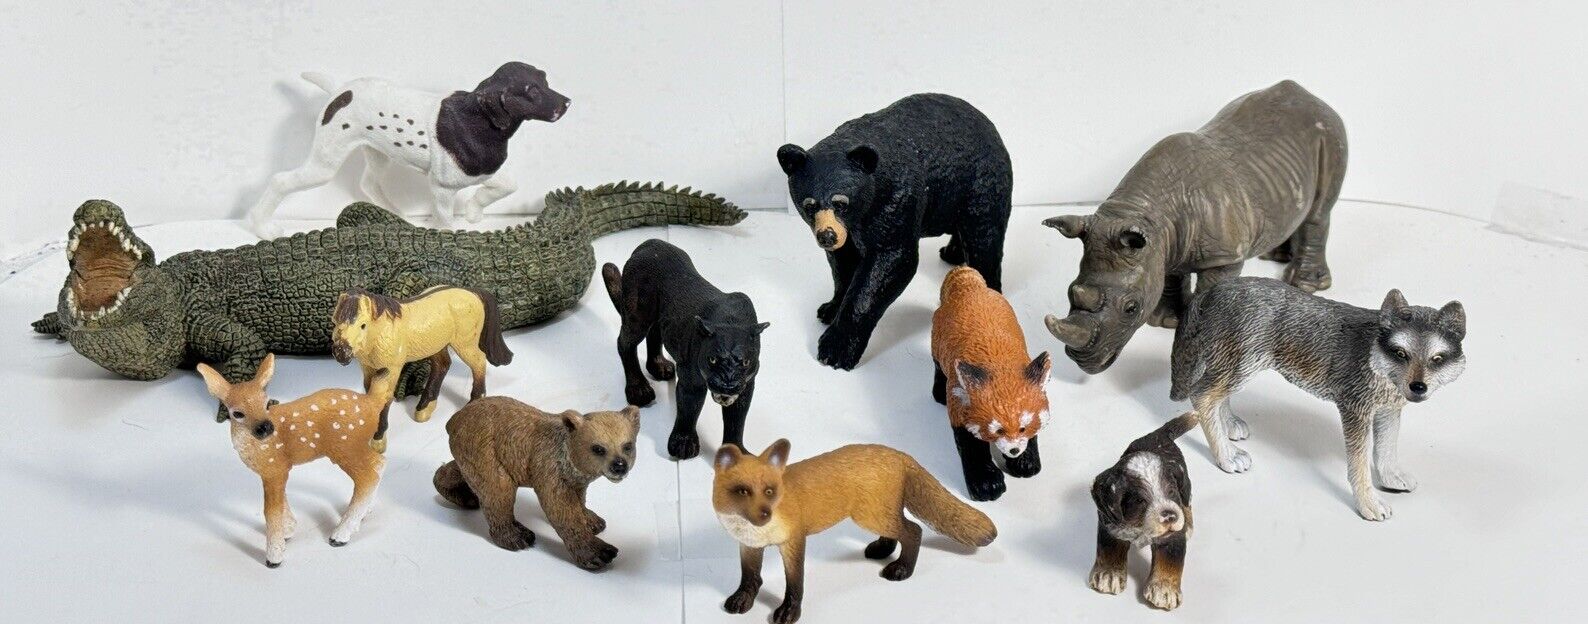 Excellent Condition Schleich Wild Animal Toys, Vintage 69- 2008. 12 Pieces